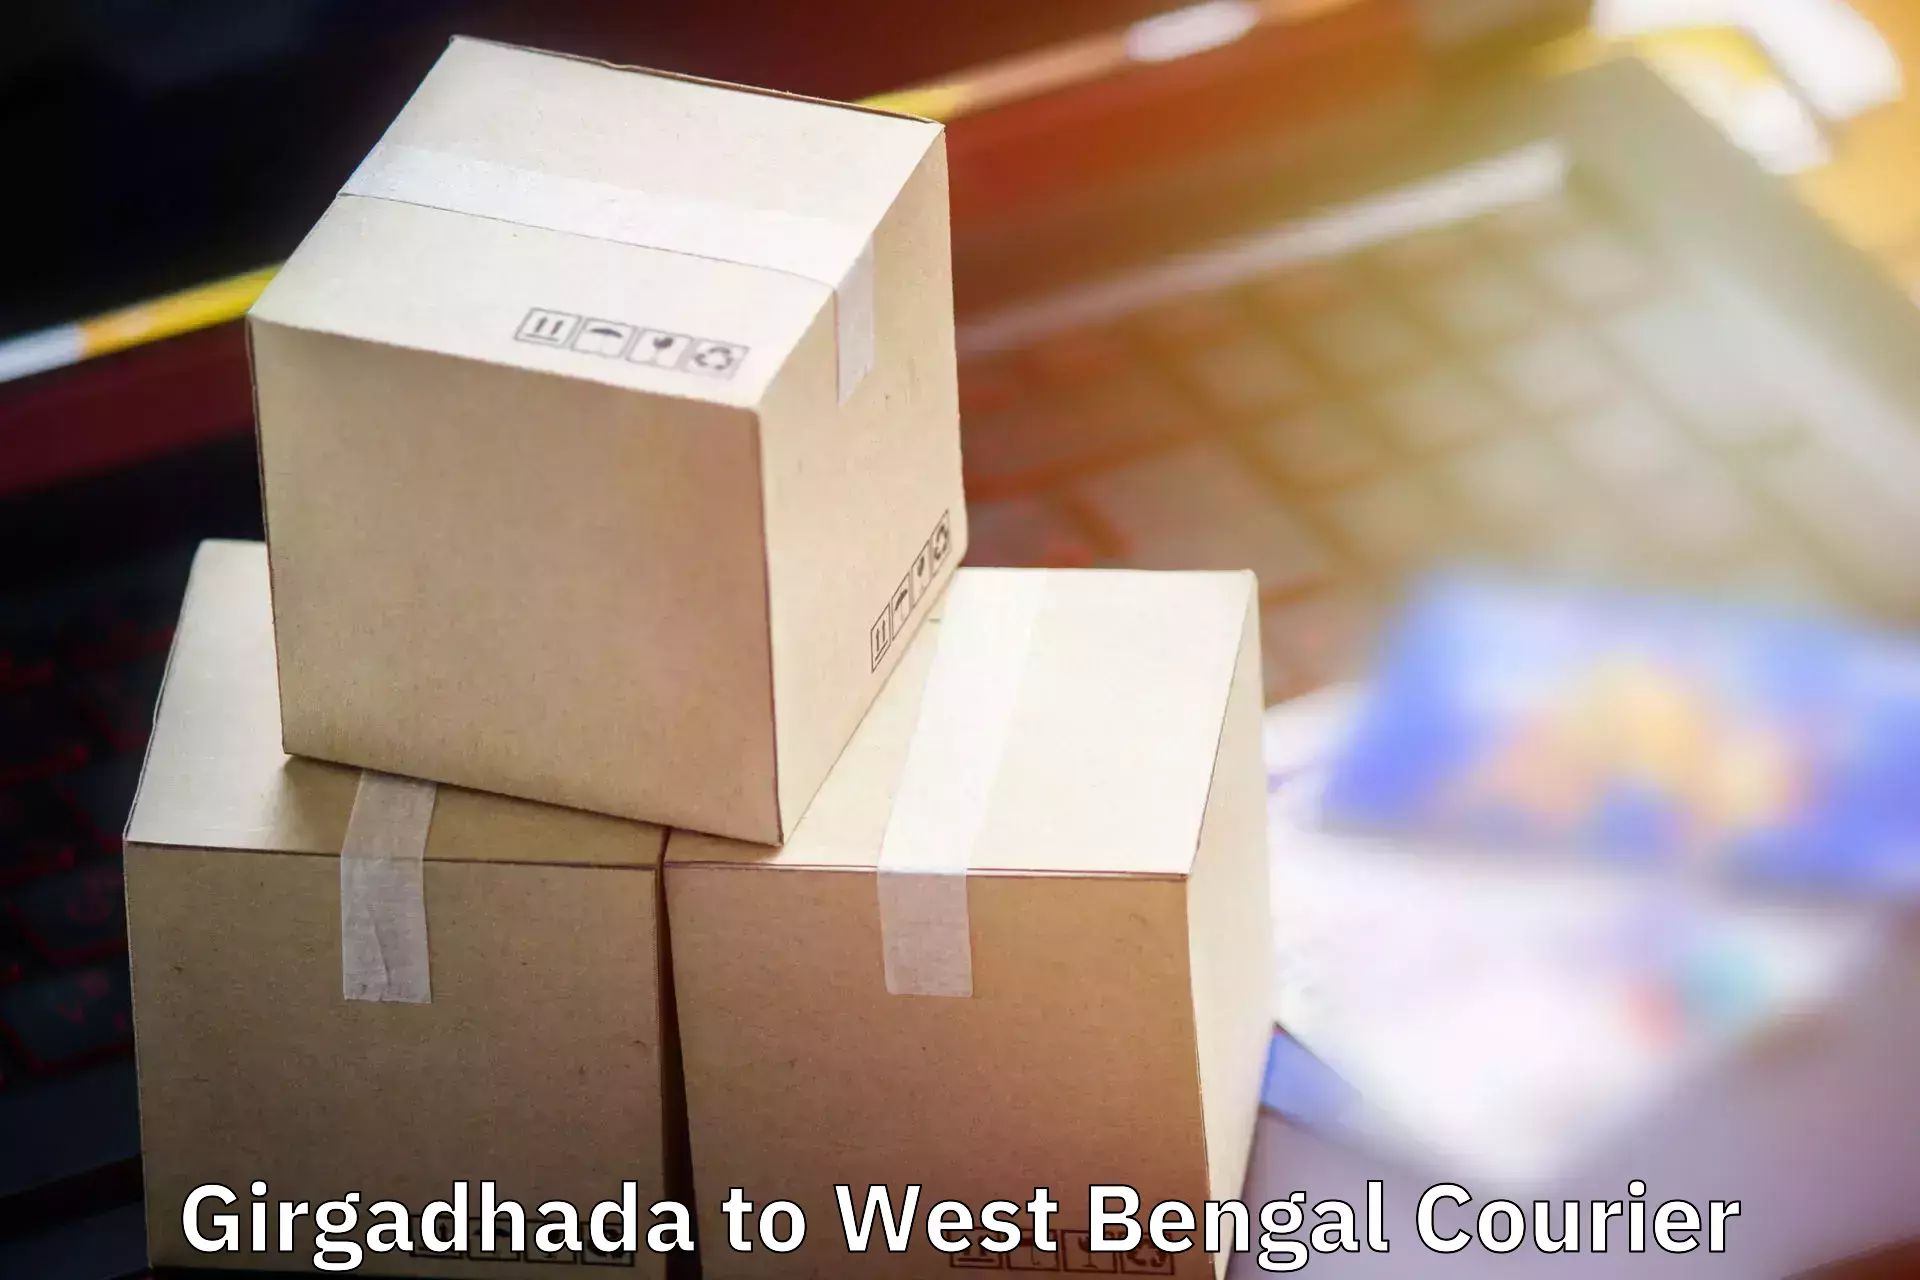 Luggage transport deals Girgadhada to NIT Shibpur